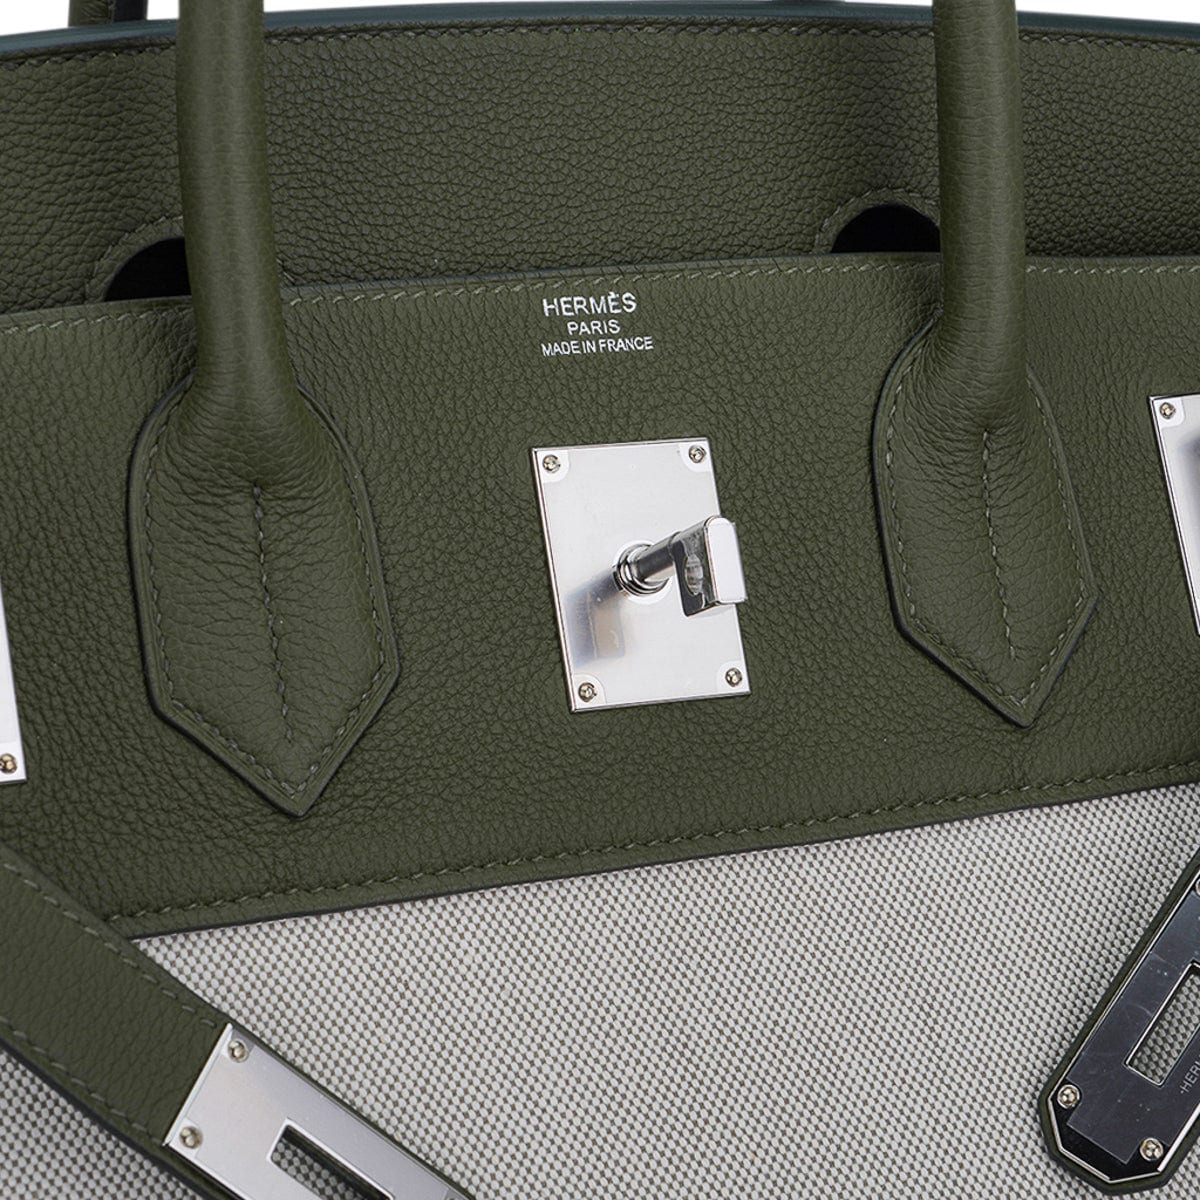 Hermes Birkin Bag in Vert Olive green Togo Leather, 35 cm size